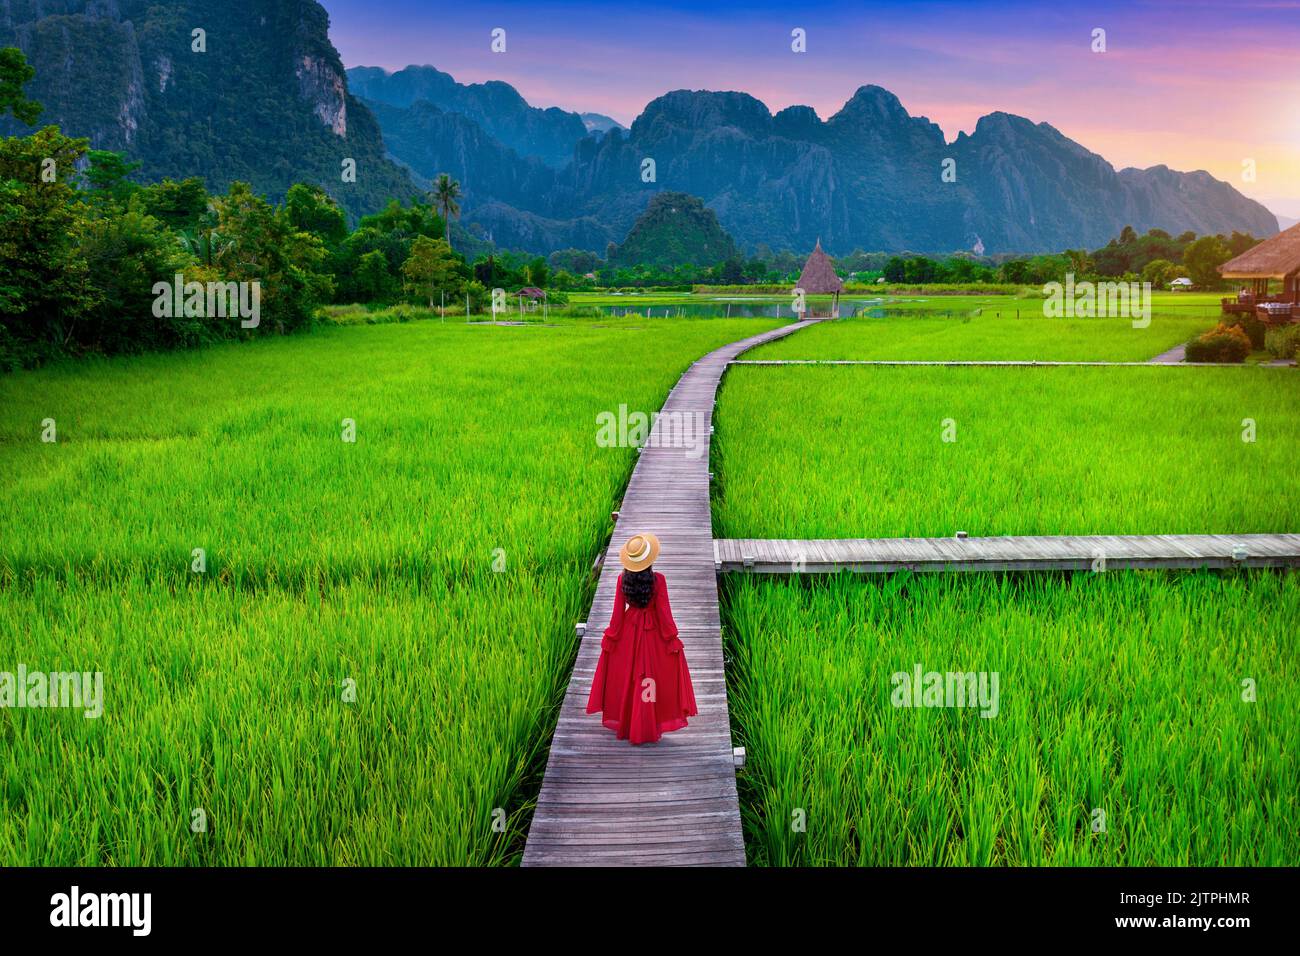 Young woman walking on wooden path avec champ de riz vert à Vang Vieng, Laos. Banque D'Images